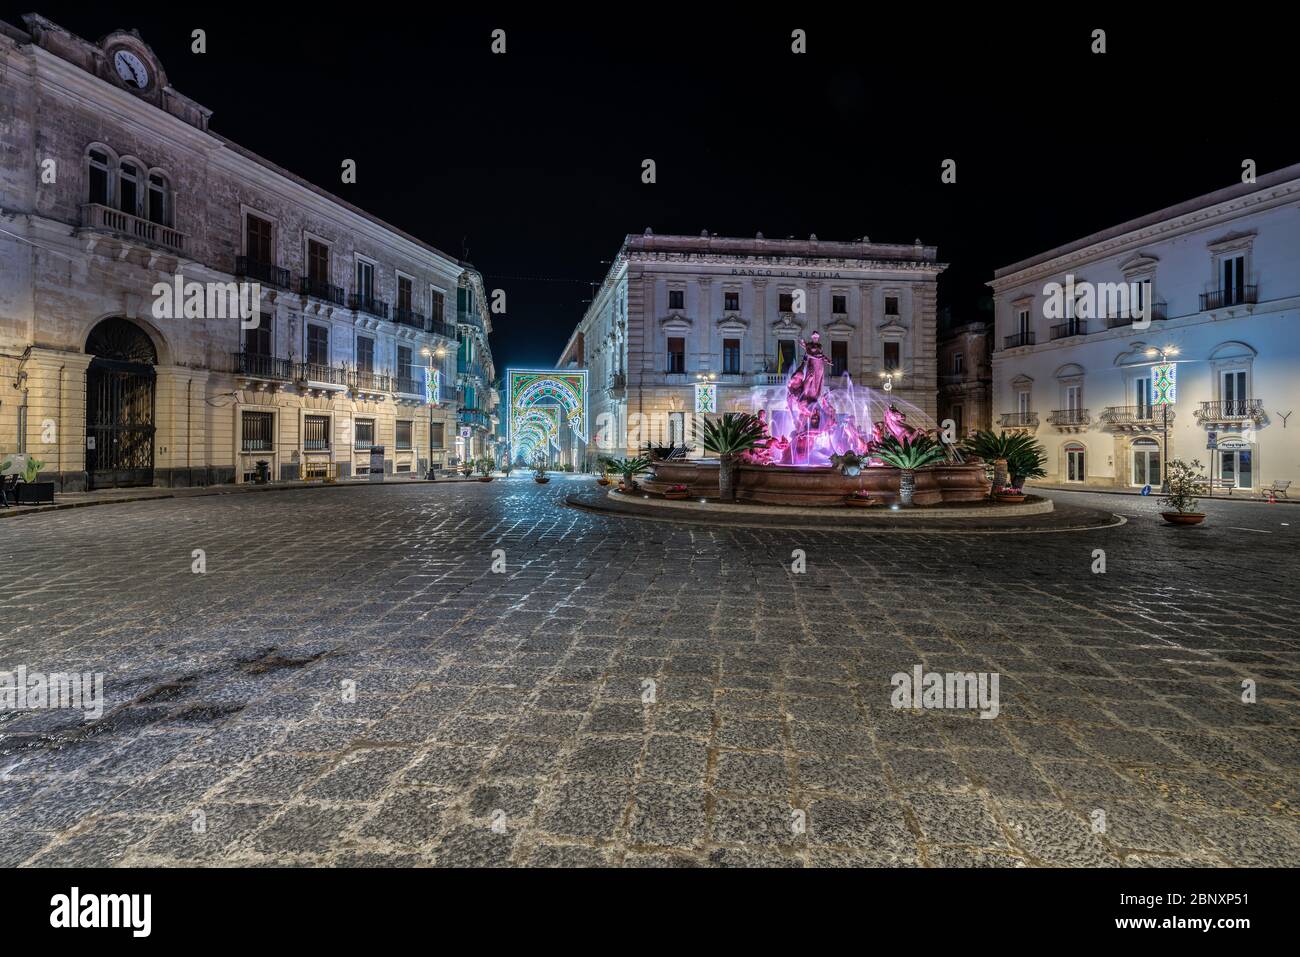 Siracusa Sicilia/Italia - Dicembre 28 2019: Fontana di Artemis in Piazza Archimede. - immagine Foto Stock